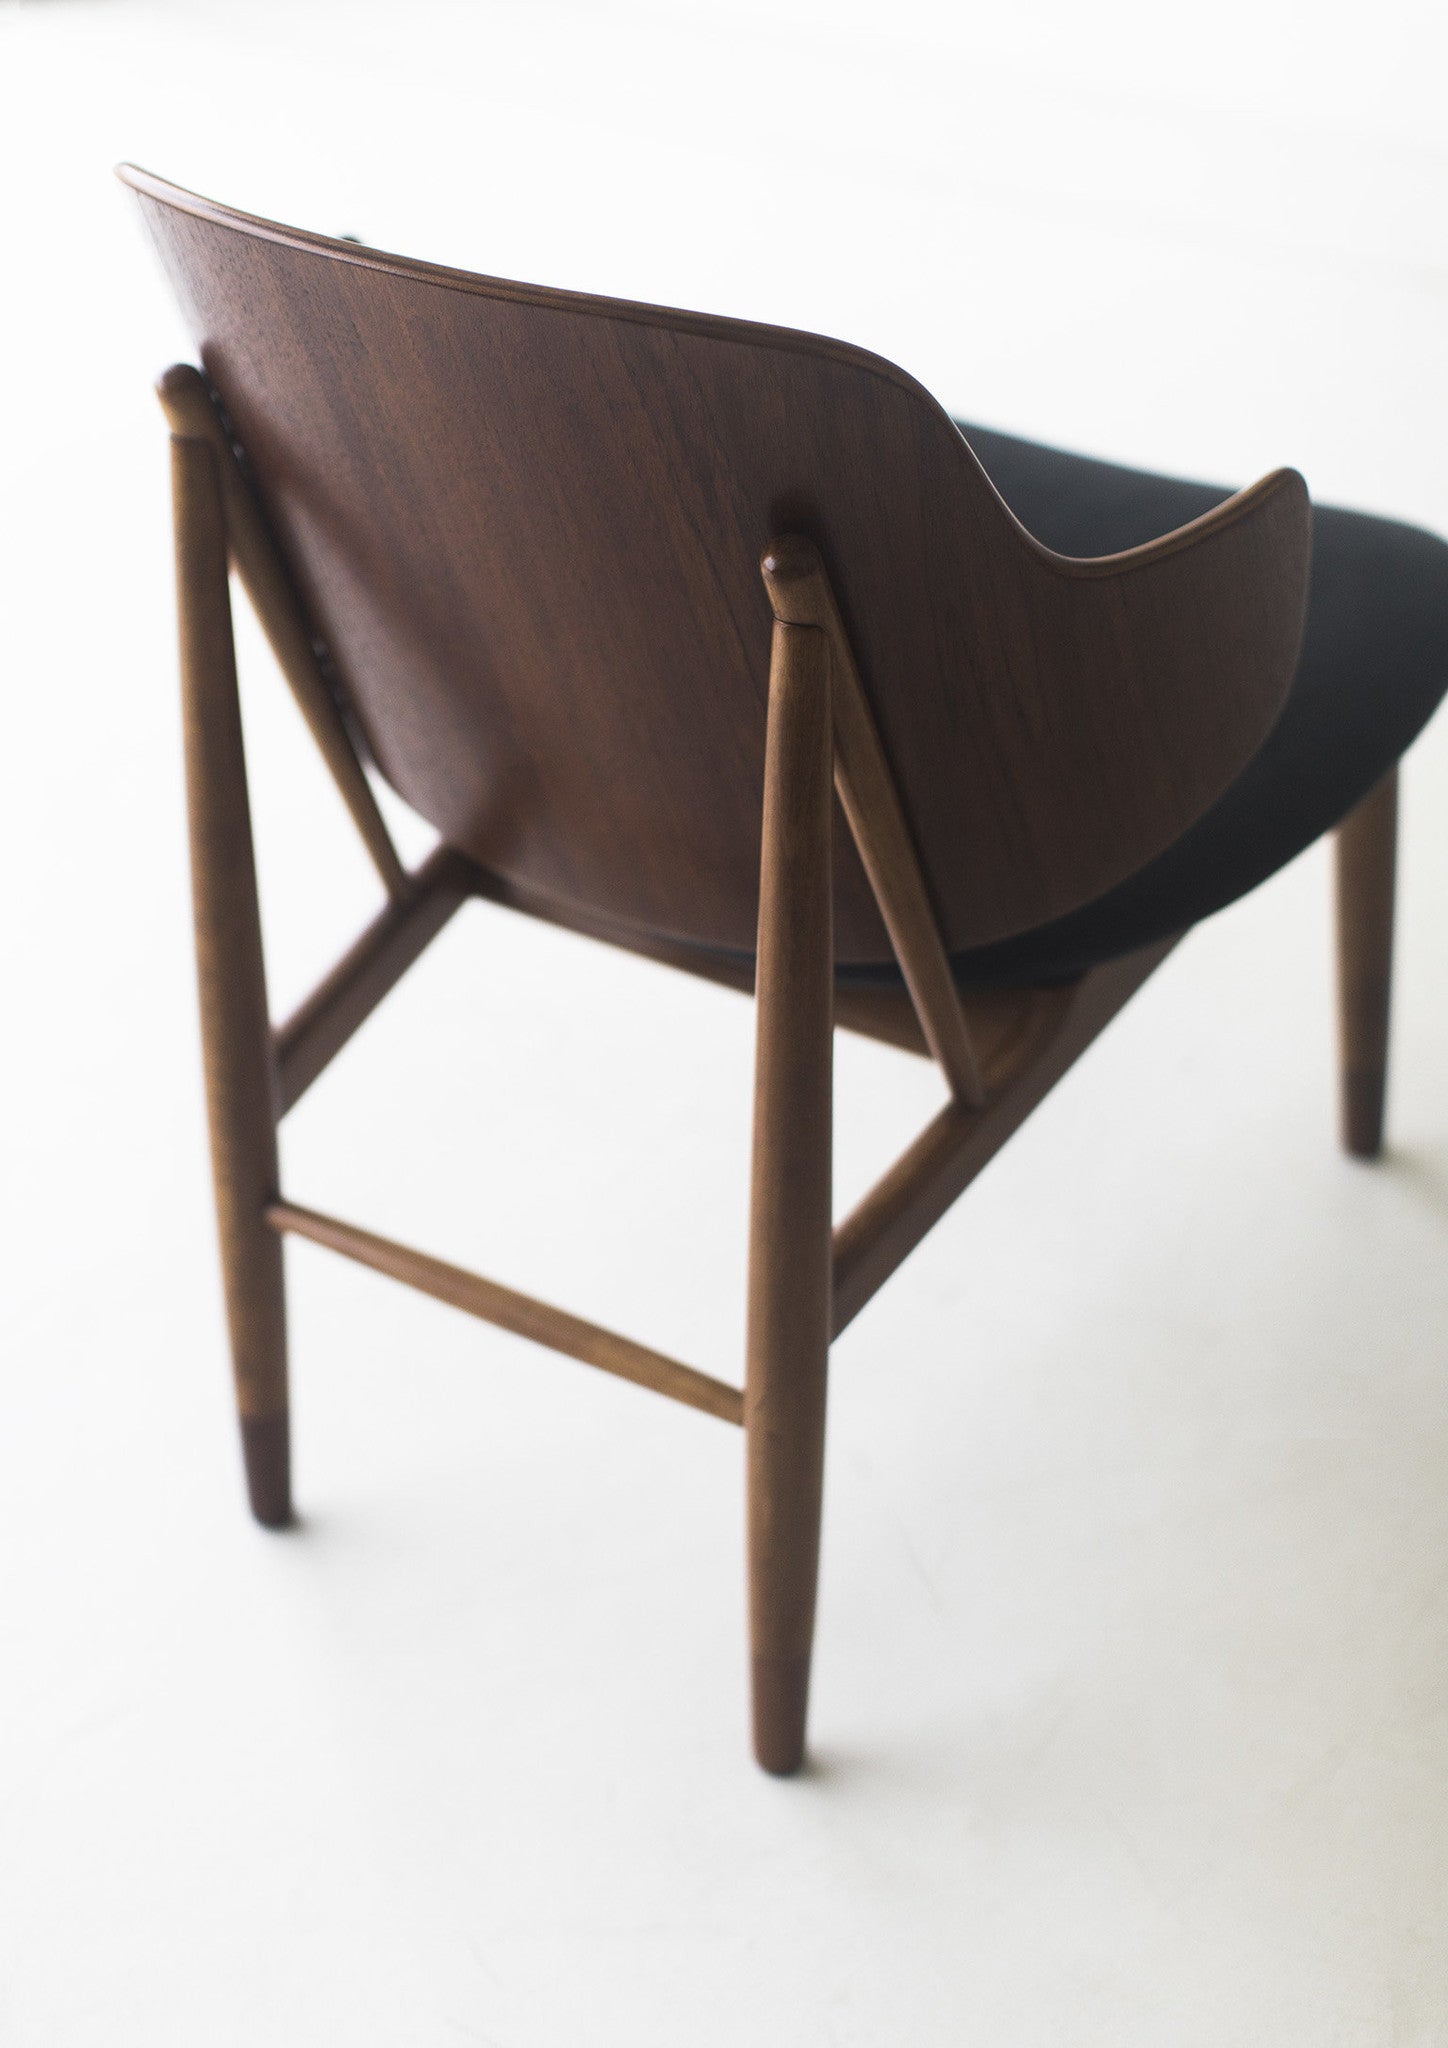 Ib Kofod-Larsen Chair for Christensen & Larsen - 03031702